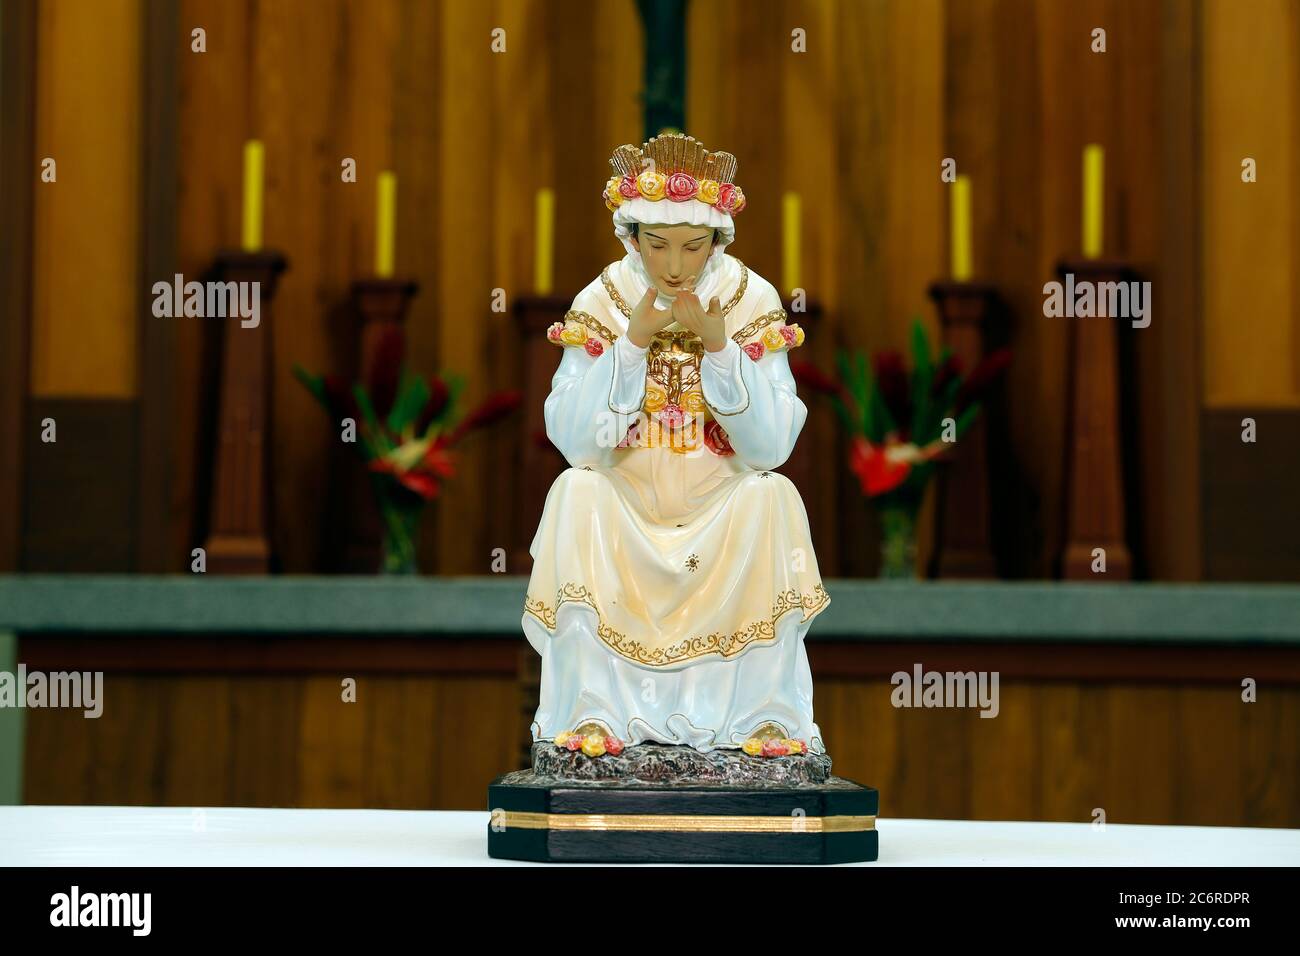 Statue de l'image de notre Dame de la Salette, une des désignations attribuées à la Vierge Marie dans l'Église catholique, mère de Dieu Banque D'Images